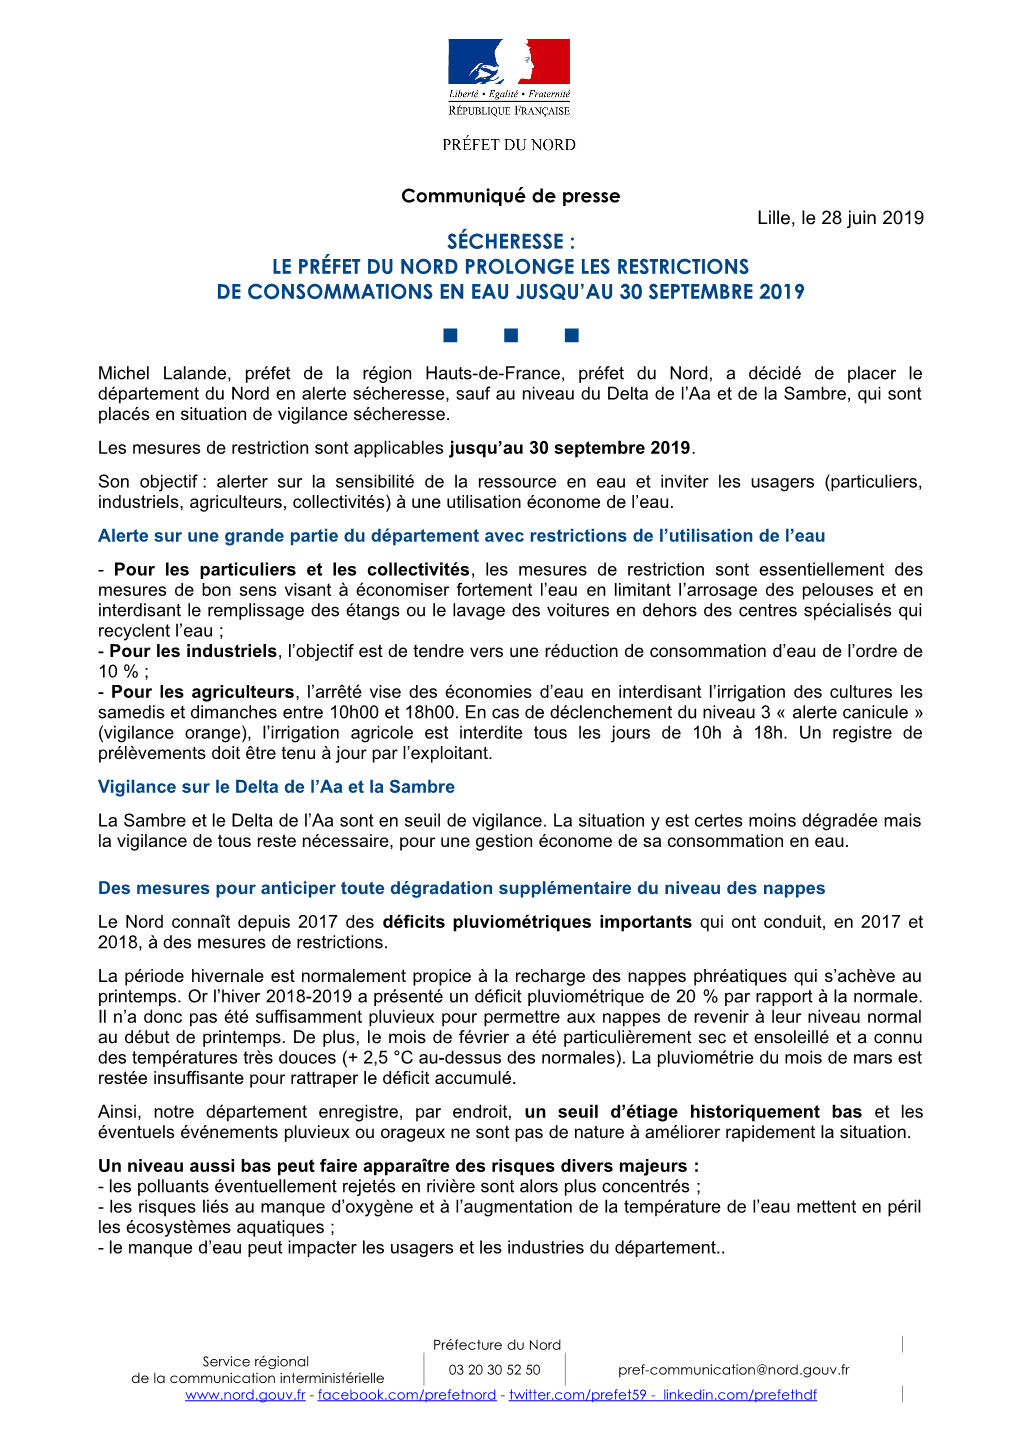 Sécheresse : Le Préfet Du Nord Prolonge Les Restrictions De Consommations En Eau Jusqu'au 30 Septembre 2019